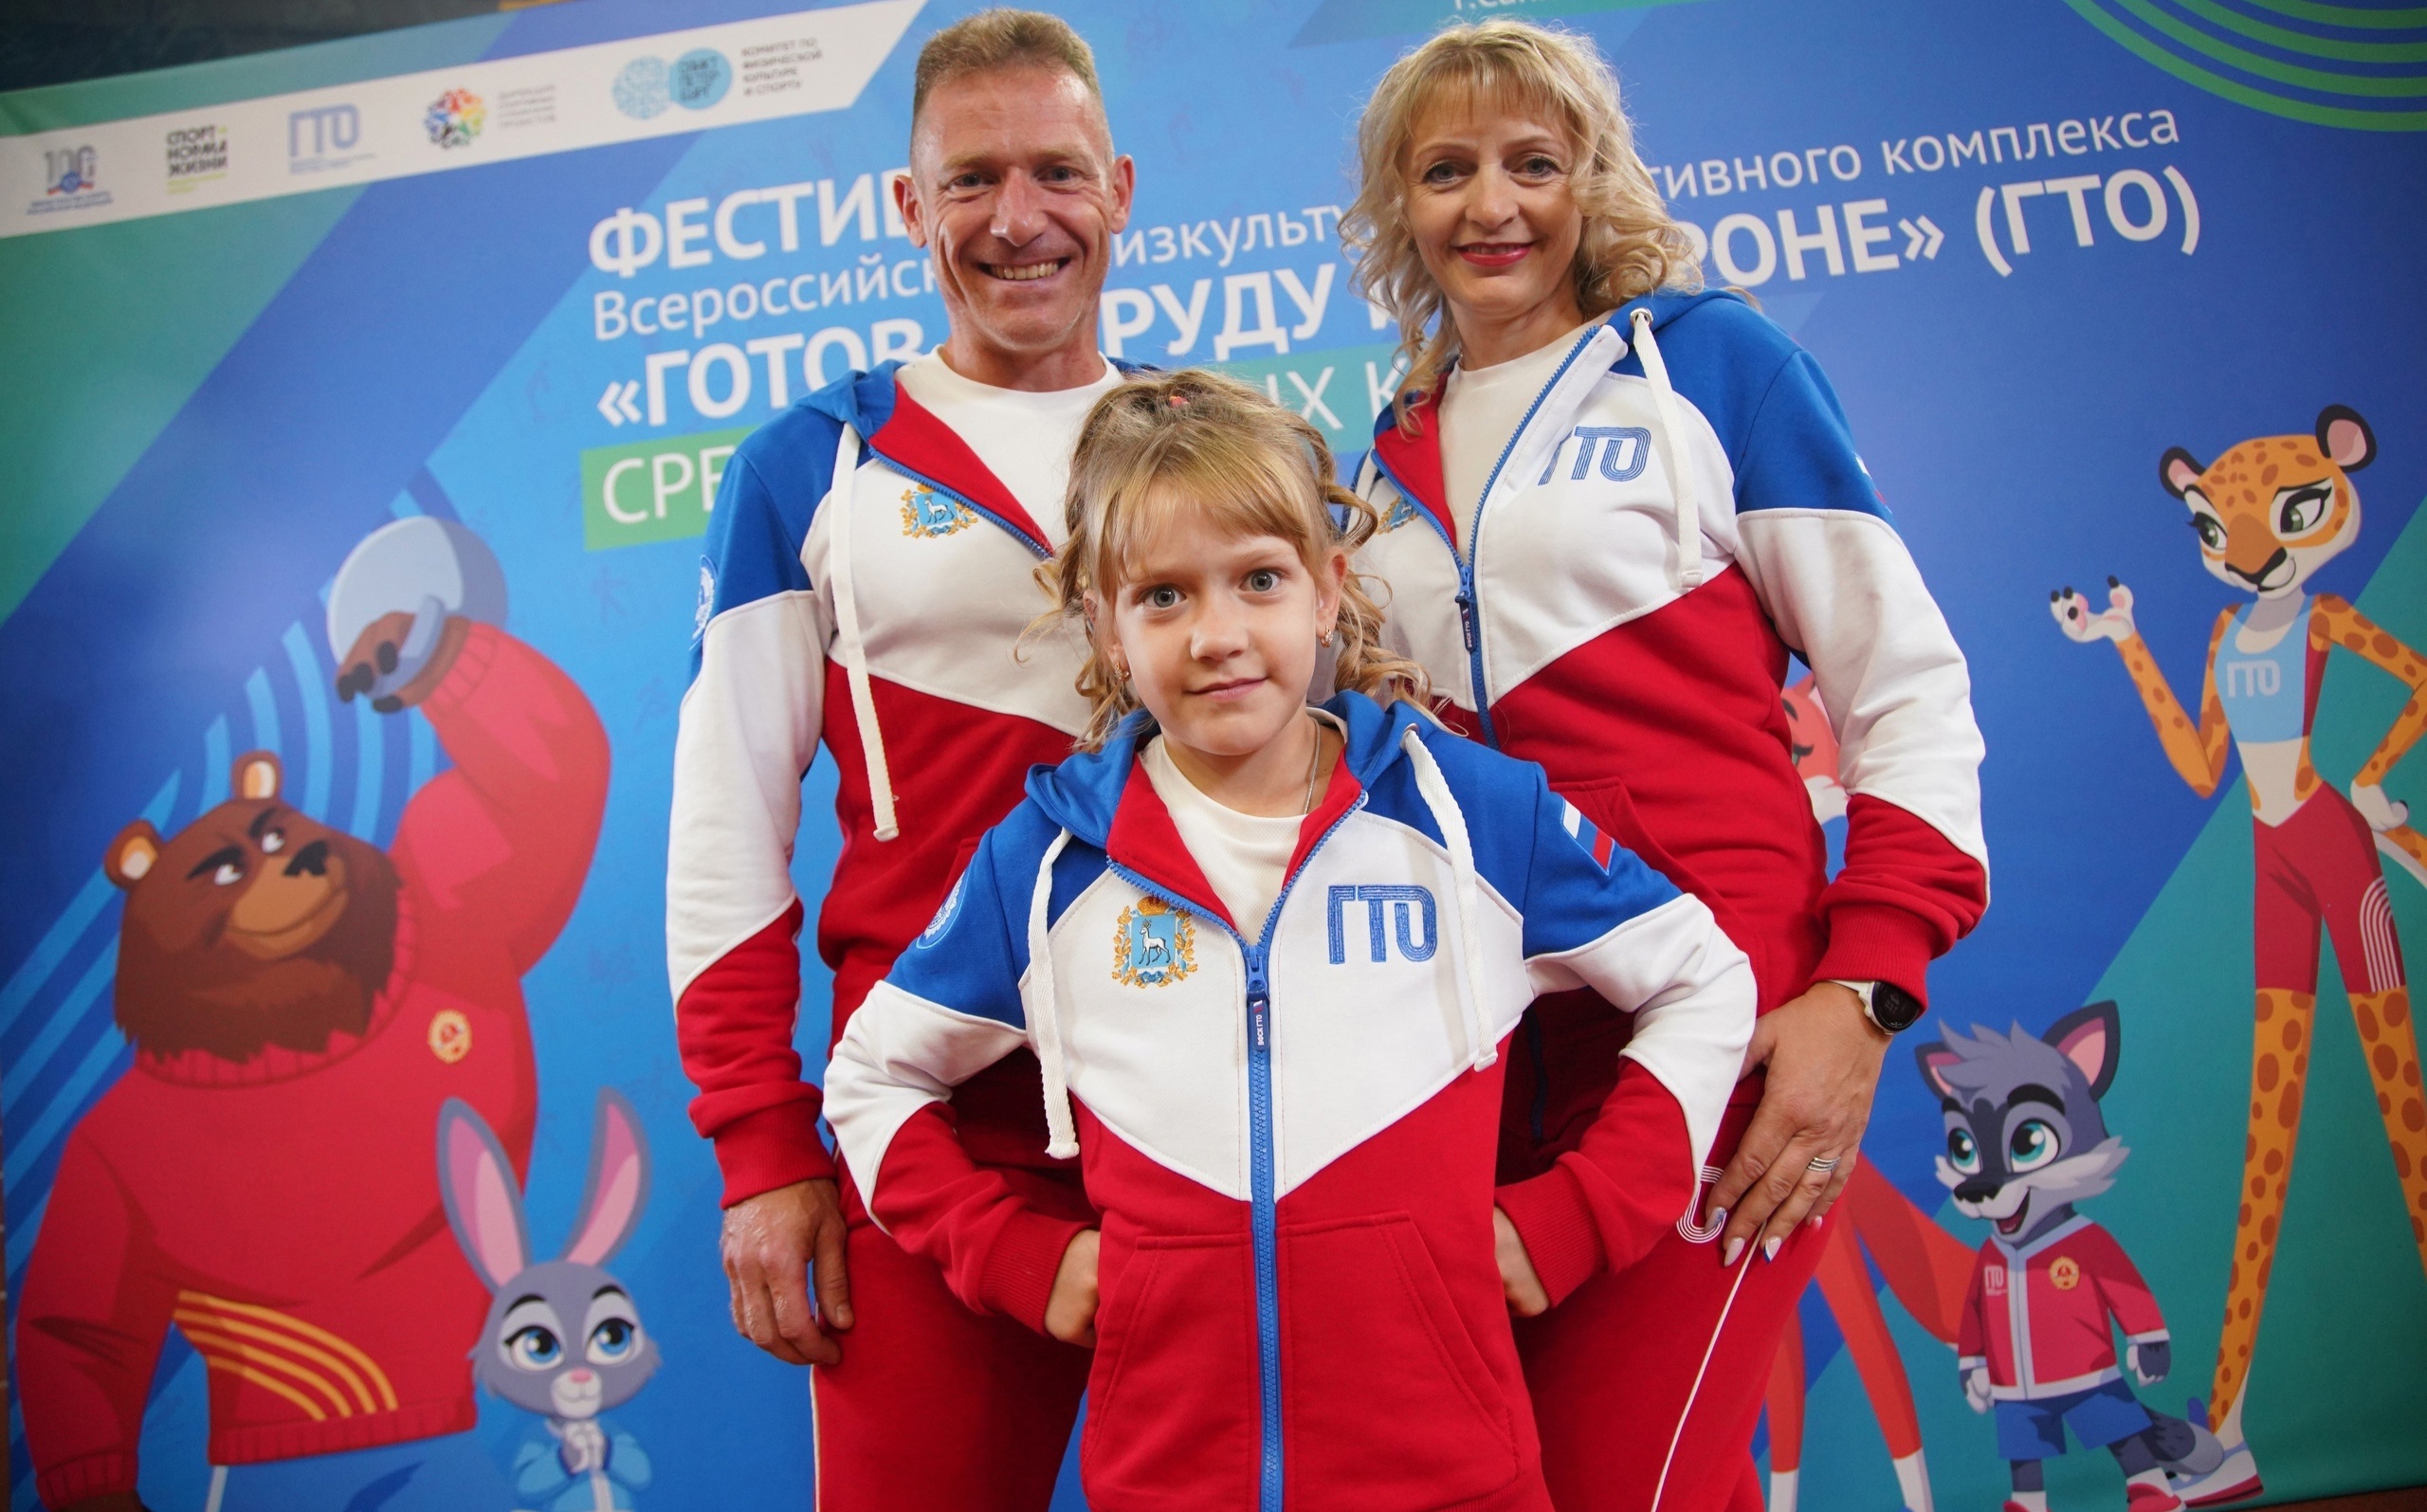 Встреча сильнейших семей России состоится в Томске.